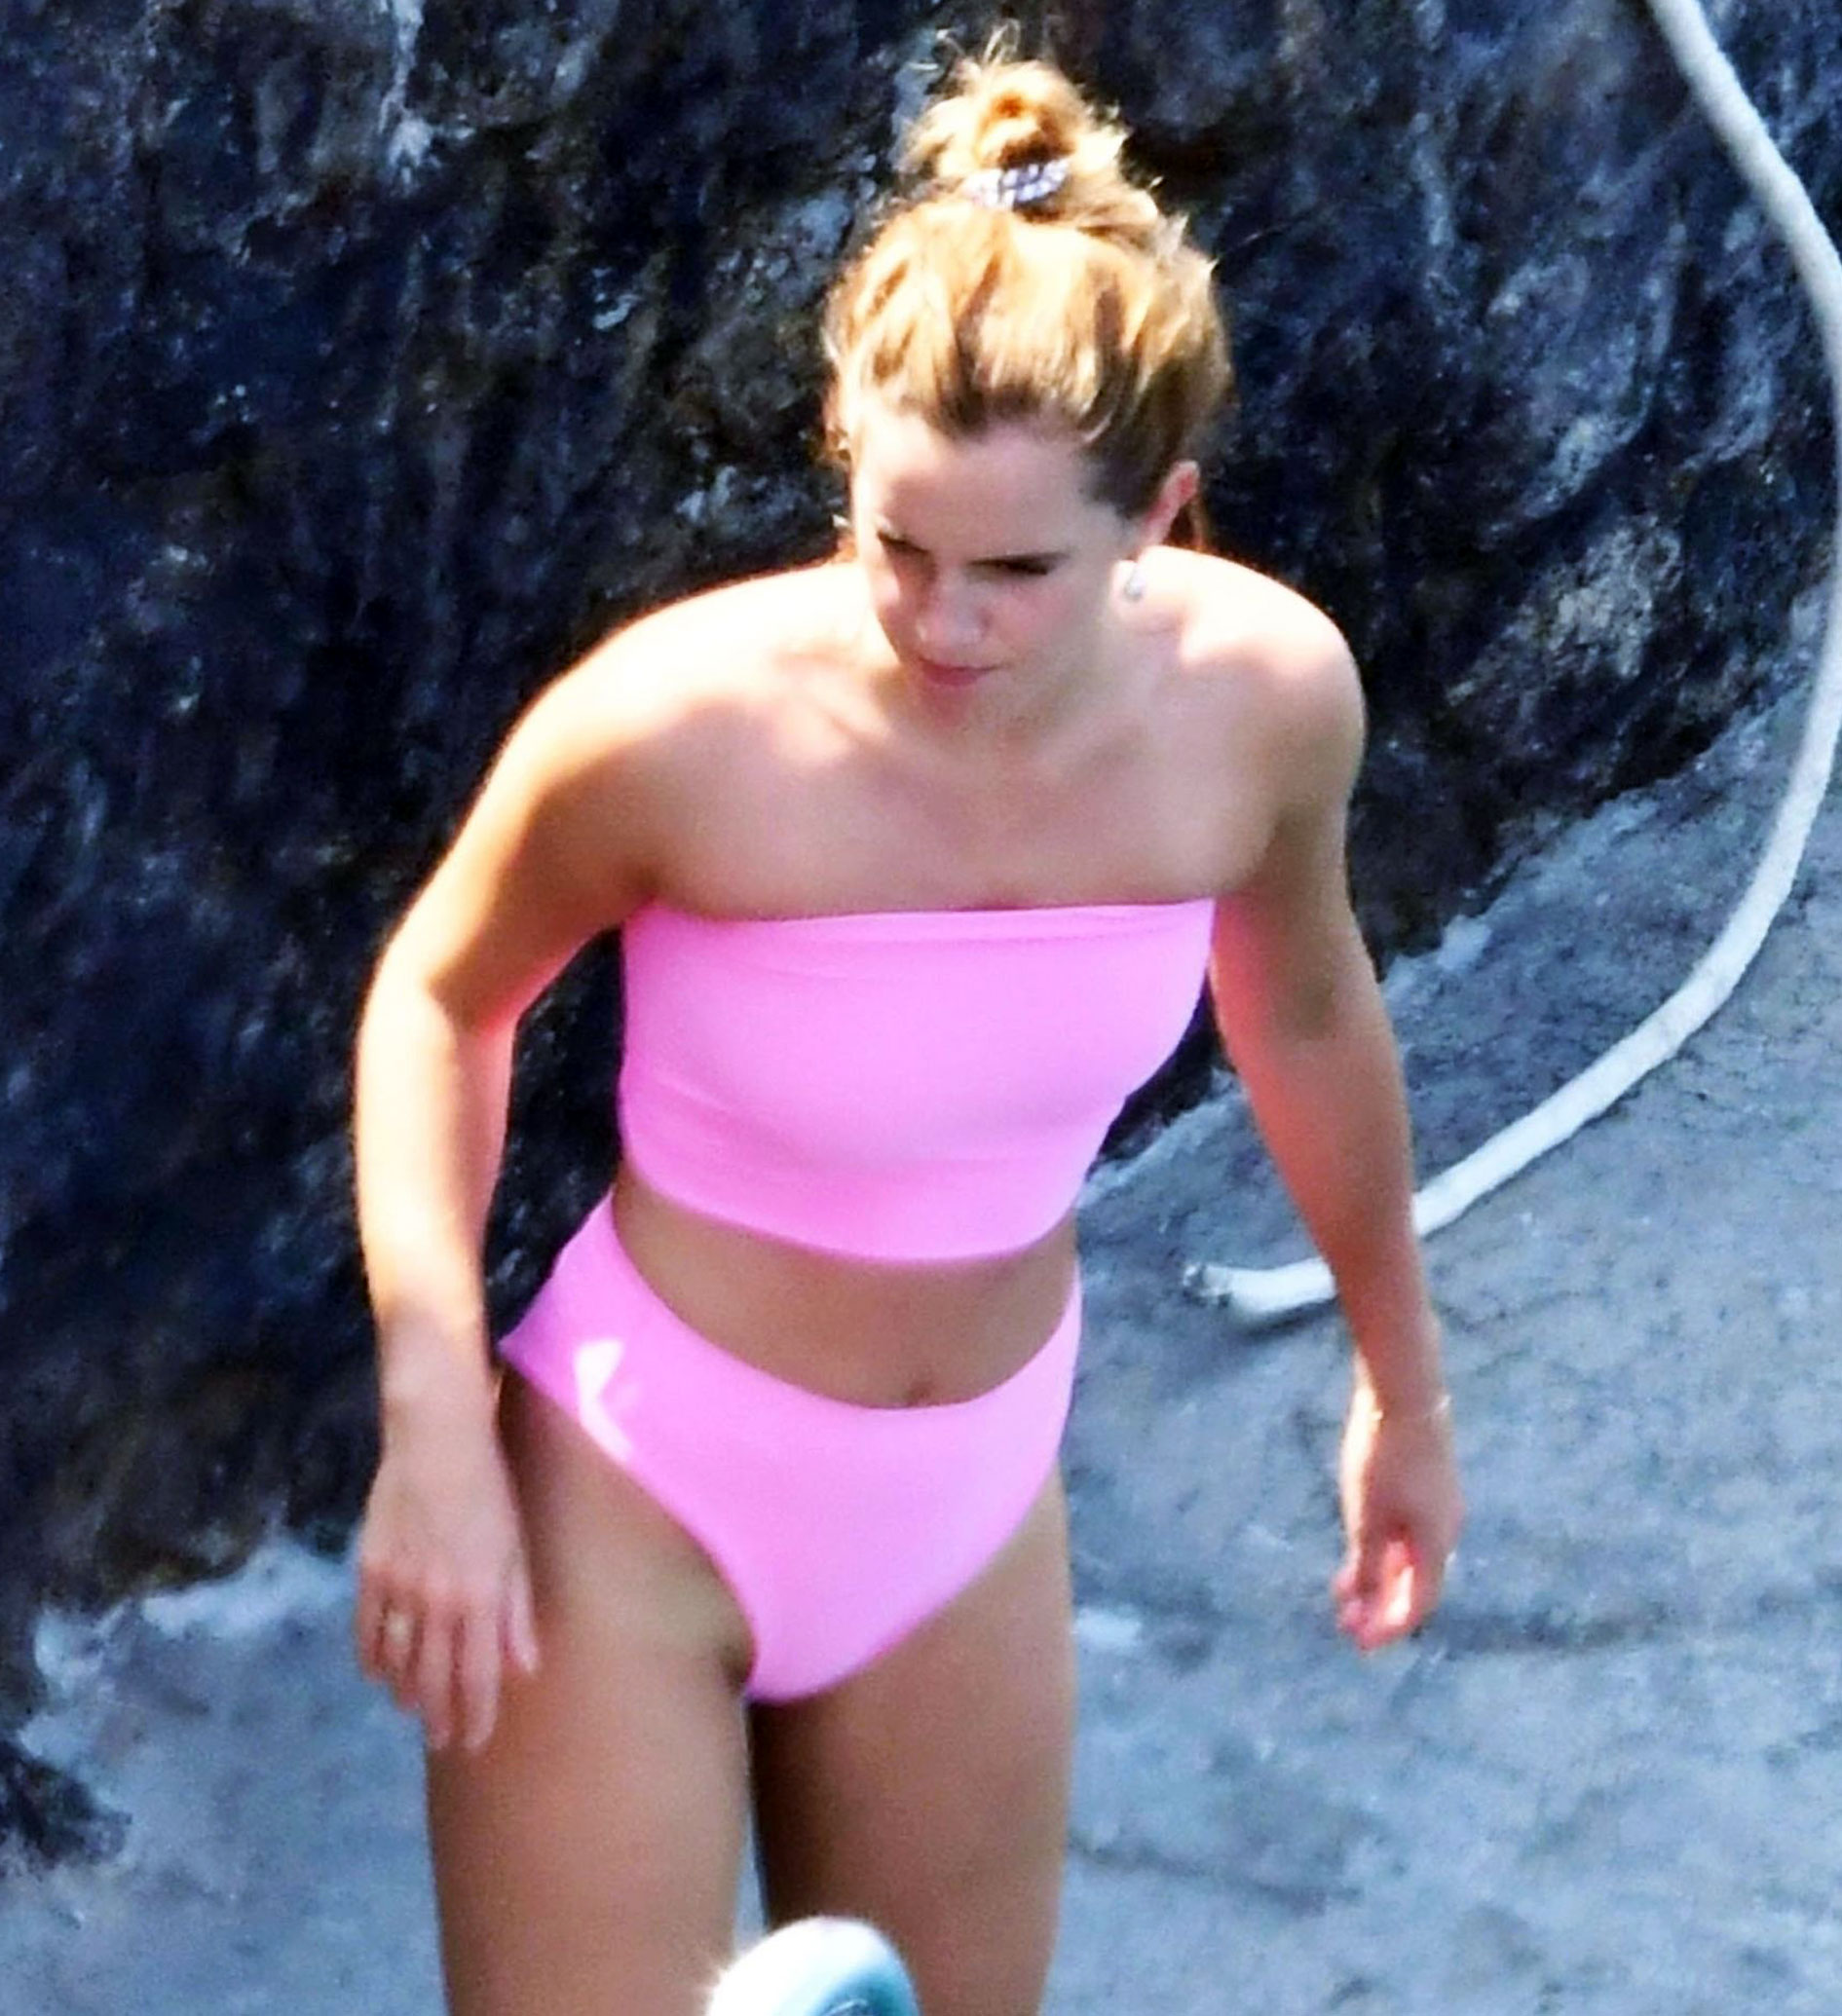 Your favorite leaked celebrity, Emma Watson showed off her bikini body in a...